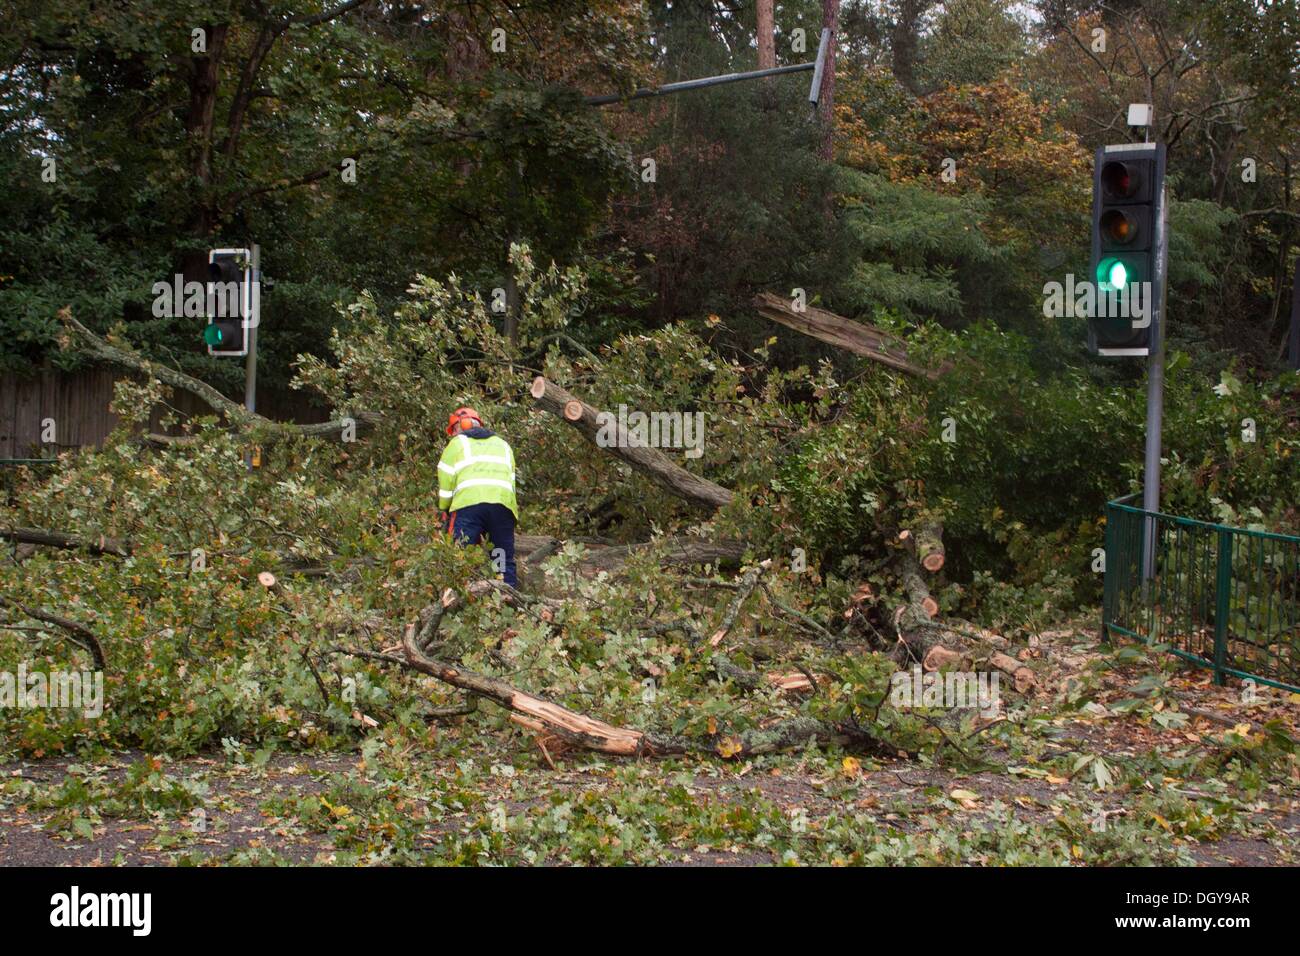 Ascot, Reino Unido. 28 Oct, 2013. Consejo empleados borrando un árbol caído en la A329 entre Ascot y Bracknell. La tormenta, denominada St Jude, trajo el clima más ventosos para golpear el Reino Unido desde 1987. Crédito: Andrew Spiers/Alamy Live News Foto de stock